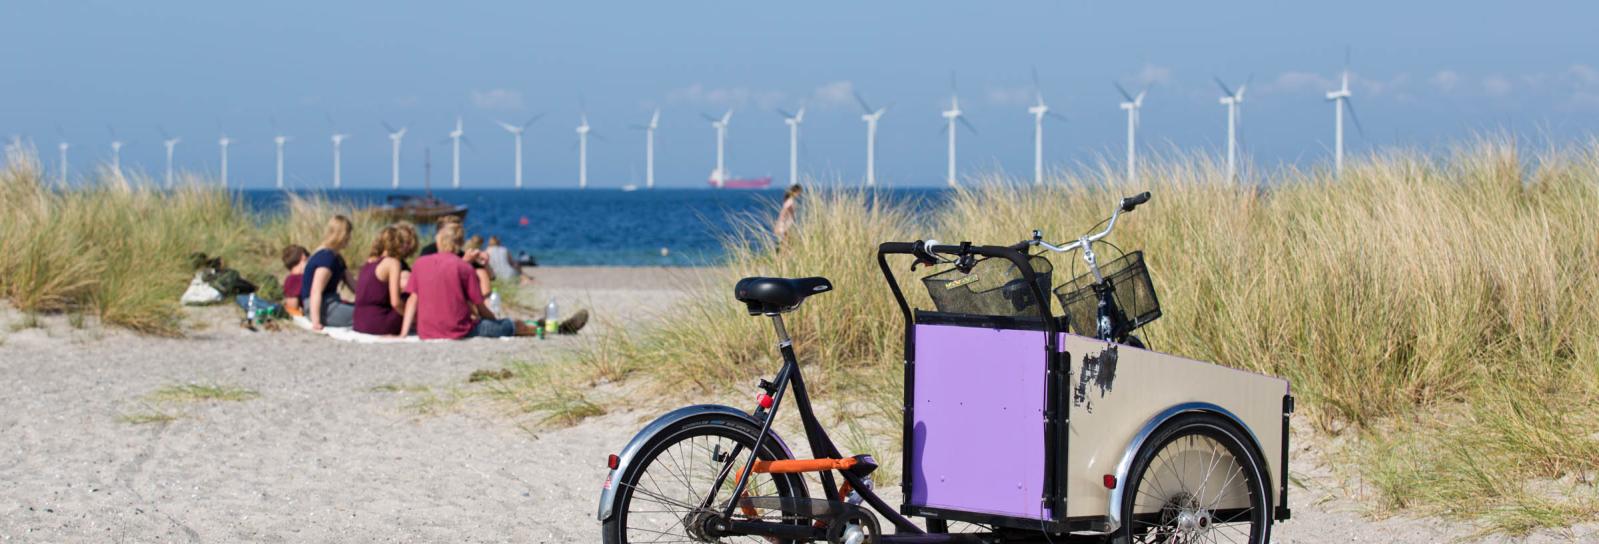 Bliv sammenfiltret med undtagelse af miljøforkæmper Amager Strandpark | Københavns Kommunes hjemmeside